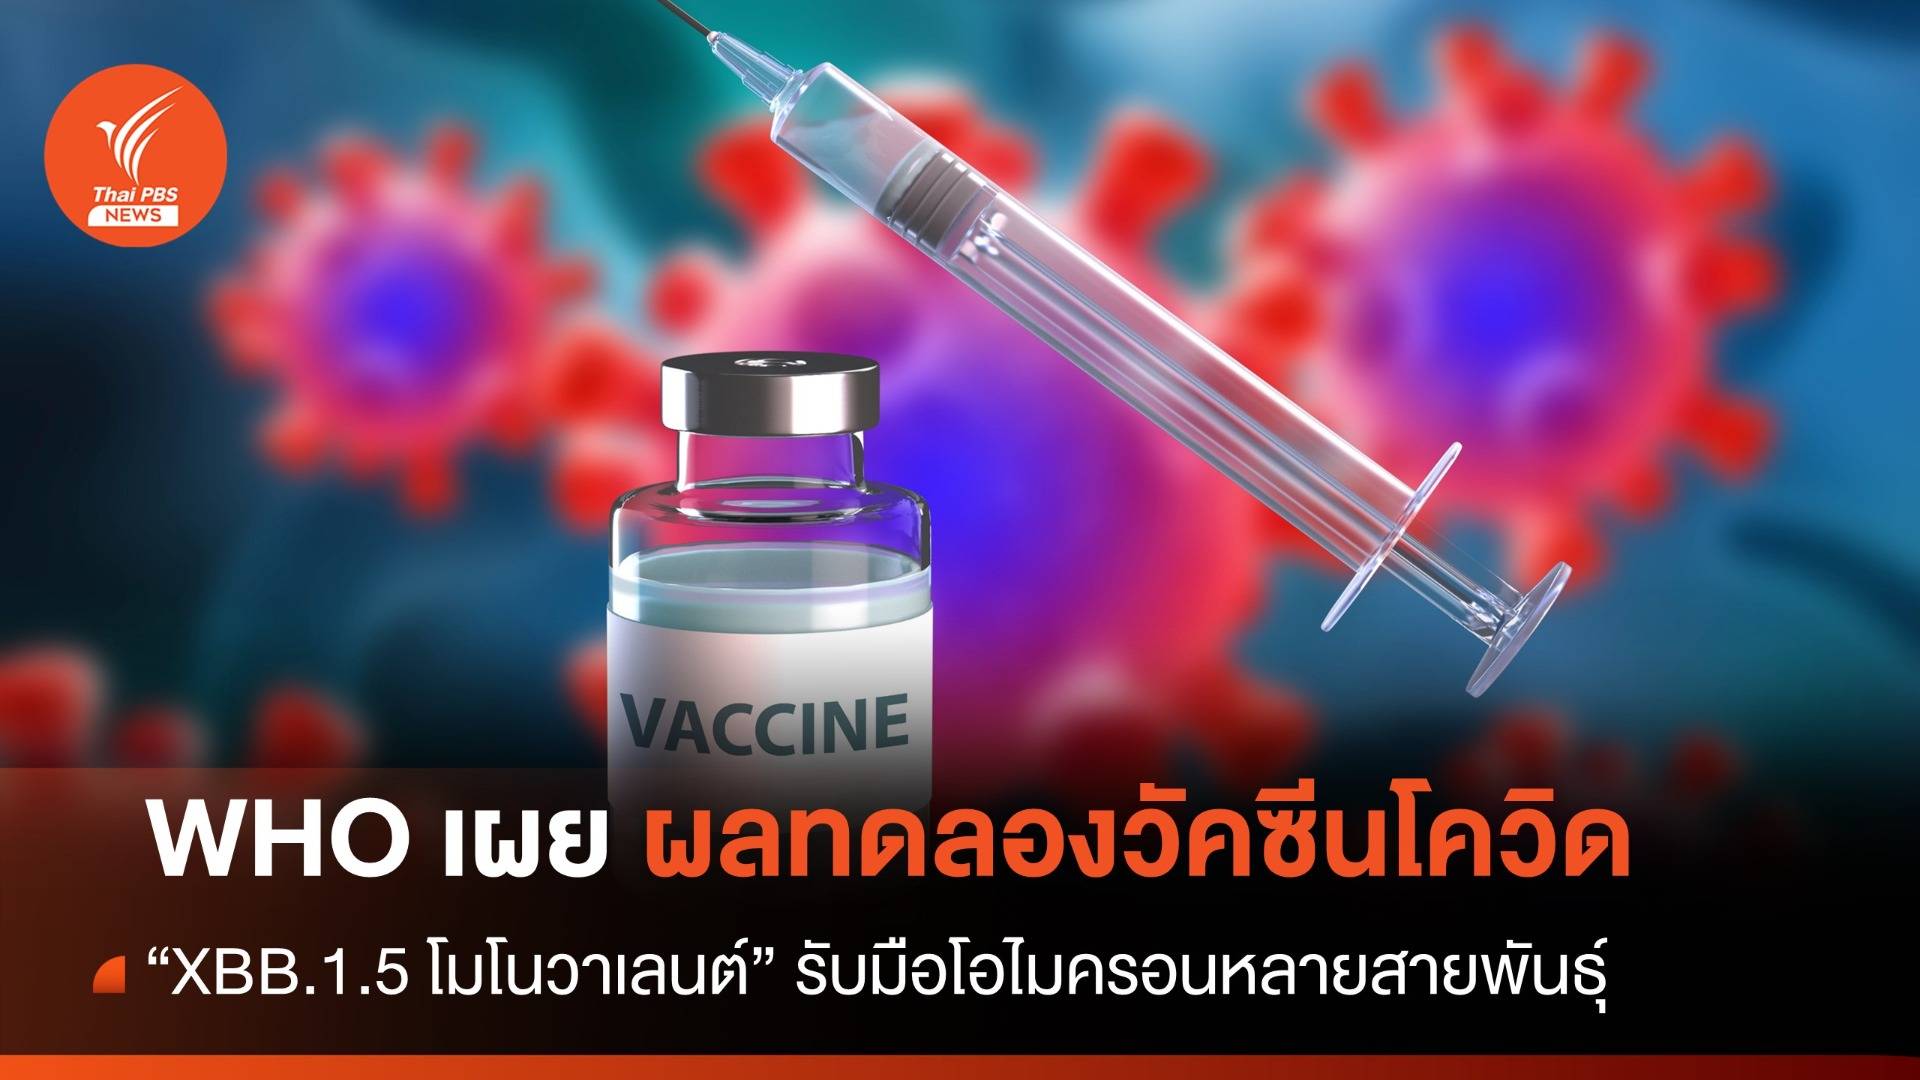 WHO เผยผลทดลองวัคซีนโควิด "XBB.1.5 โมโนวาเลนต์" รับมือโอไมครอนหลายสายพันธุ์